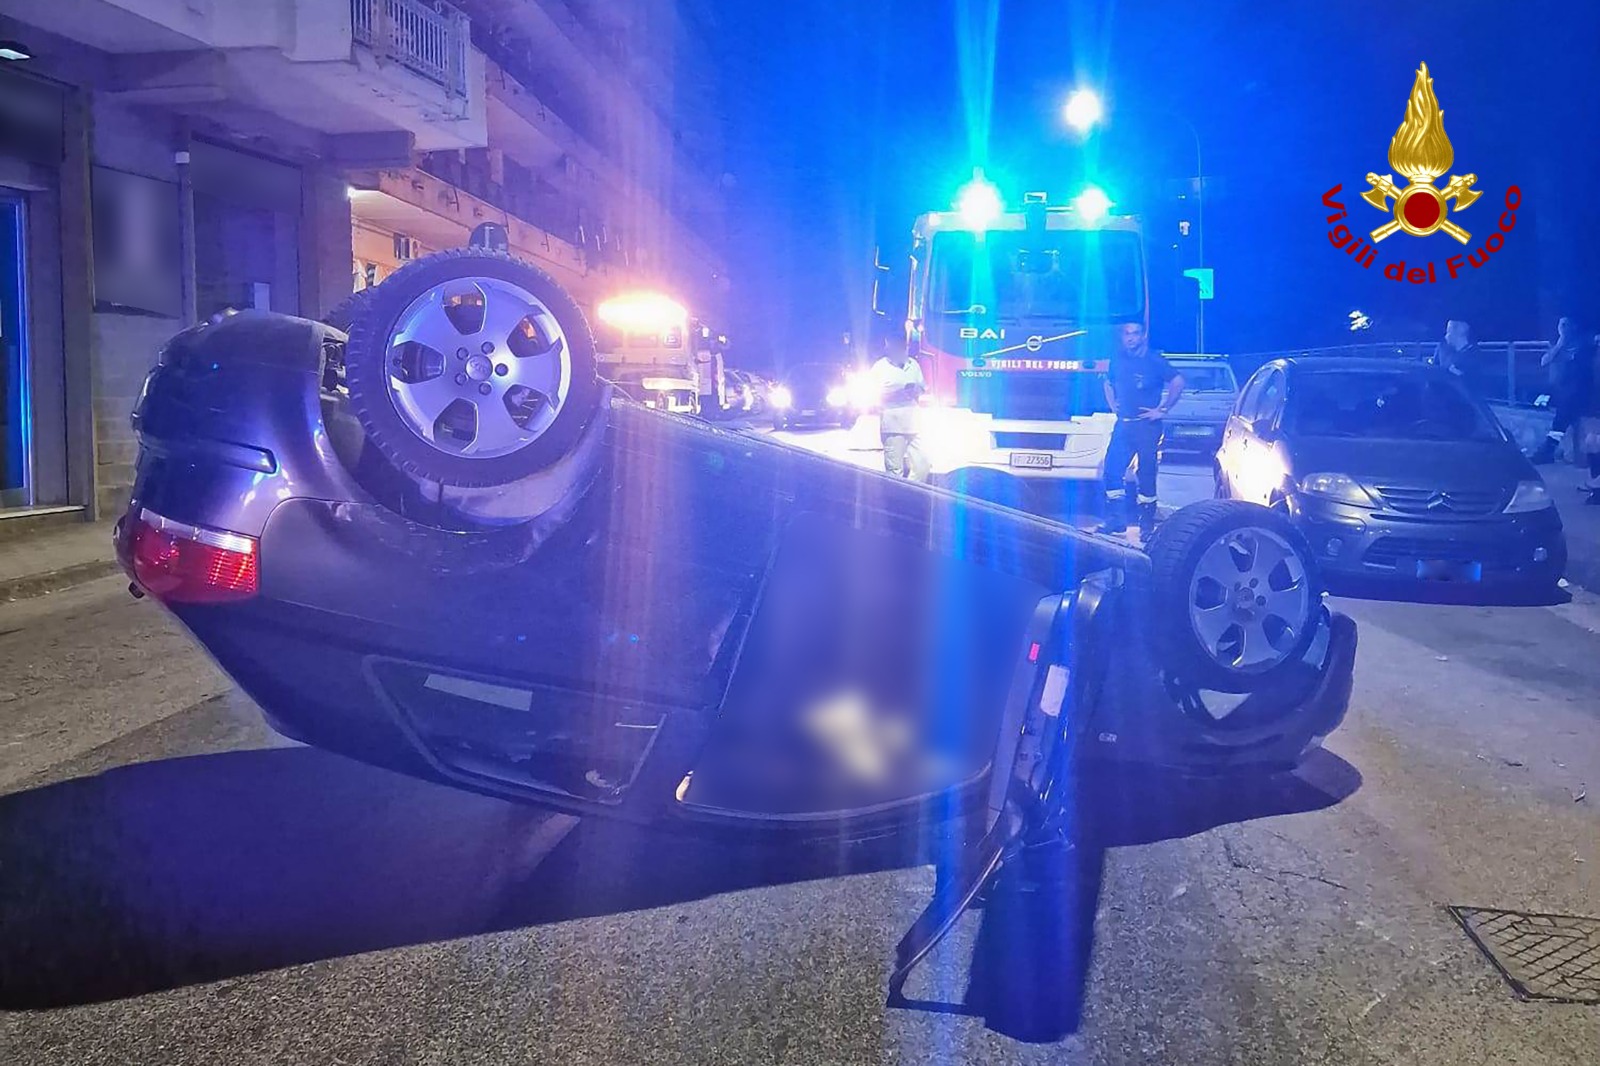 Avellino| Doppio incidente nella notte, due feriti al Moscati